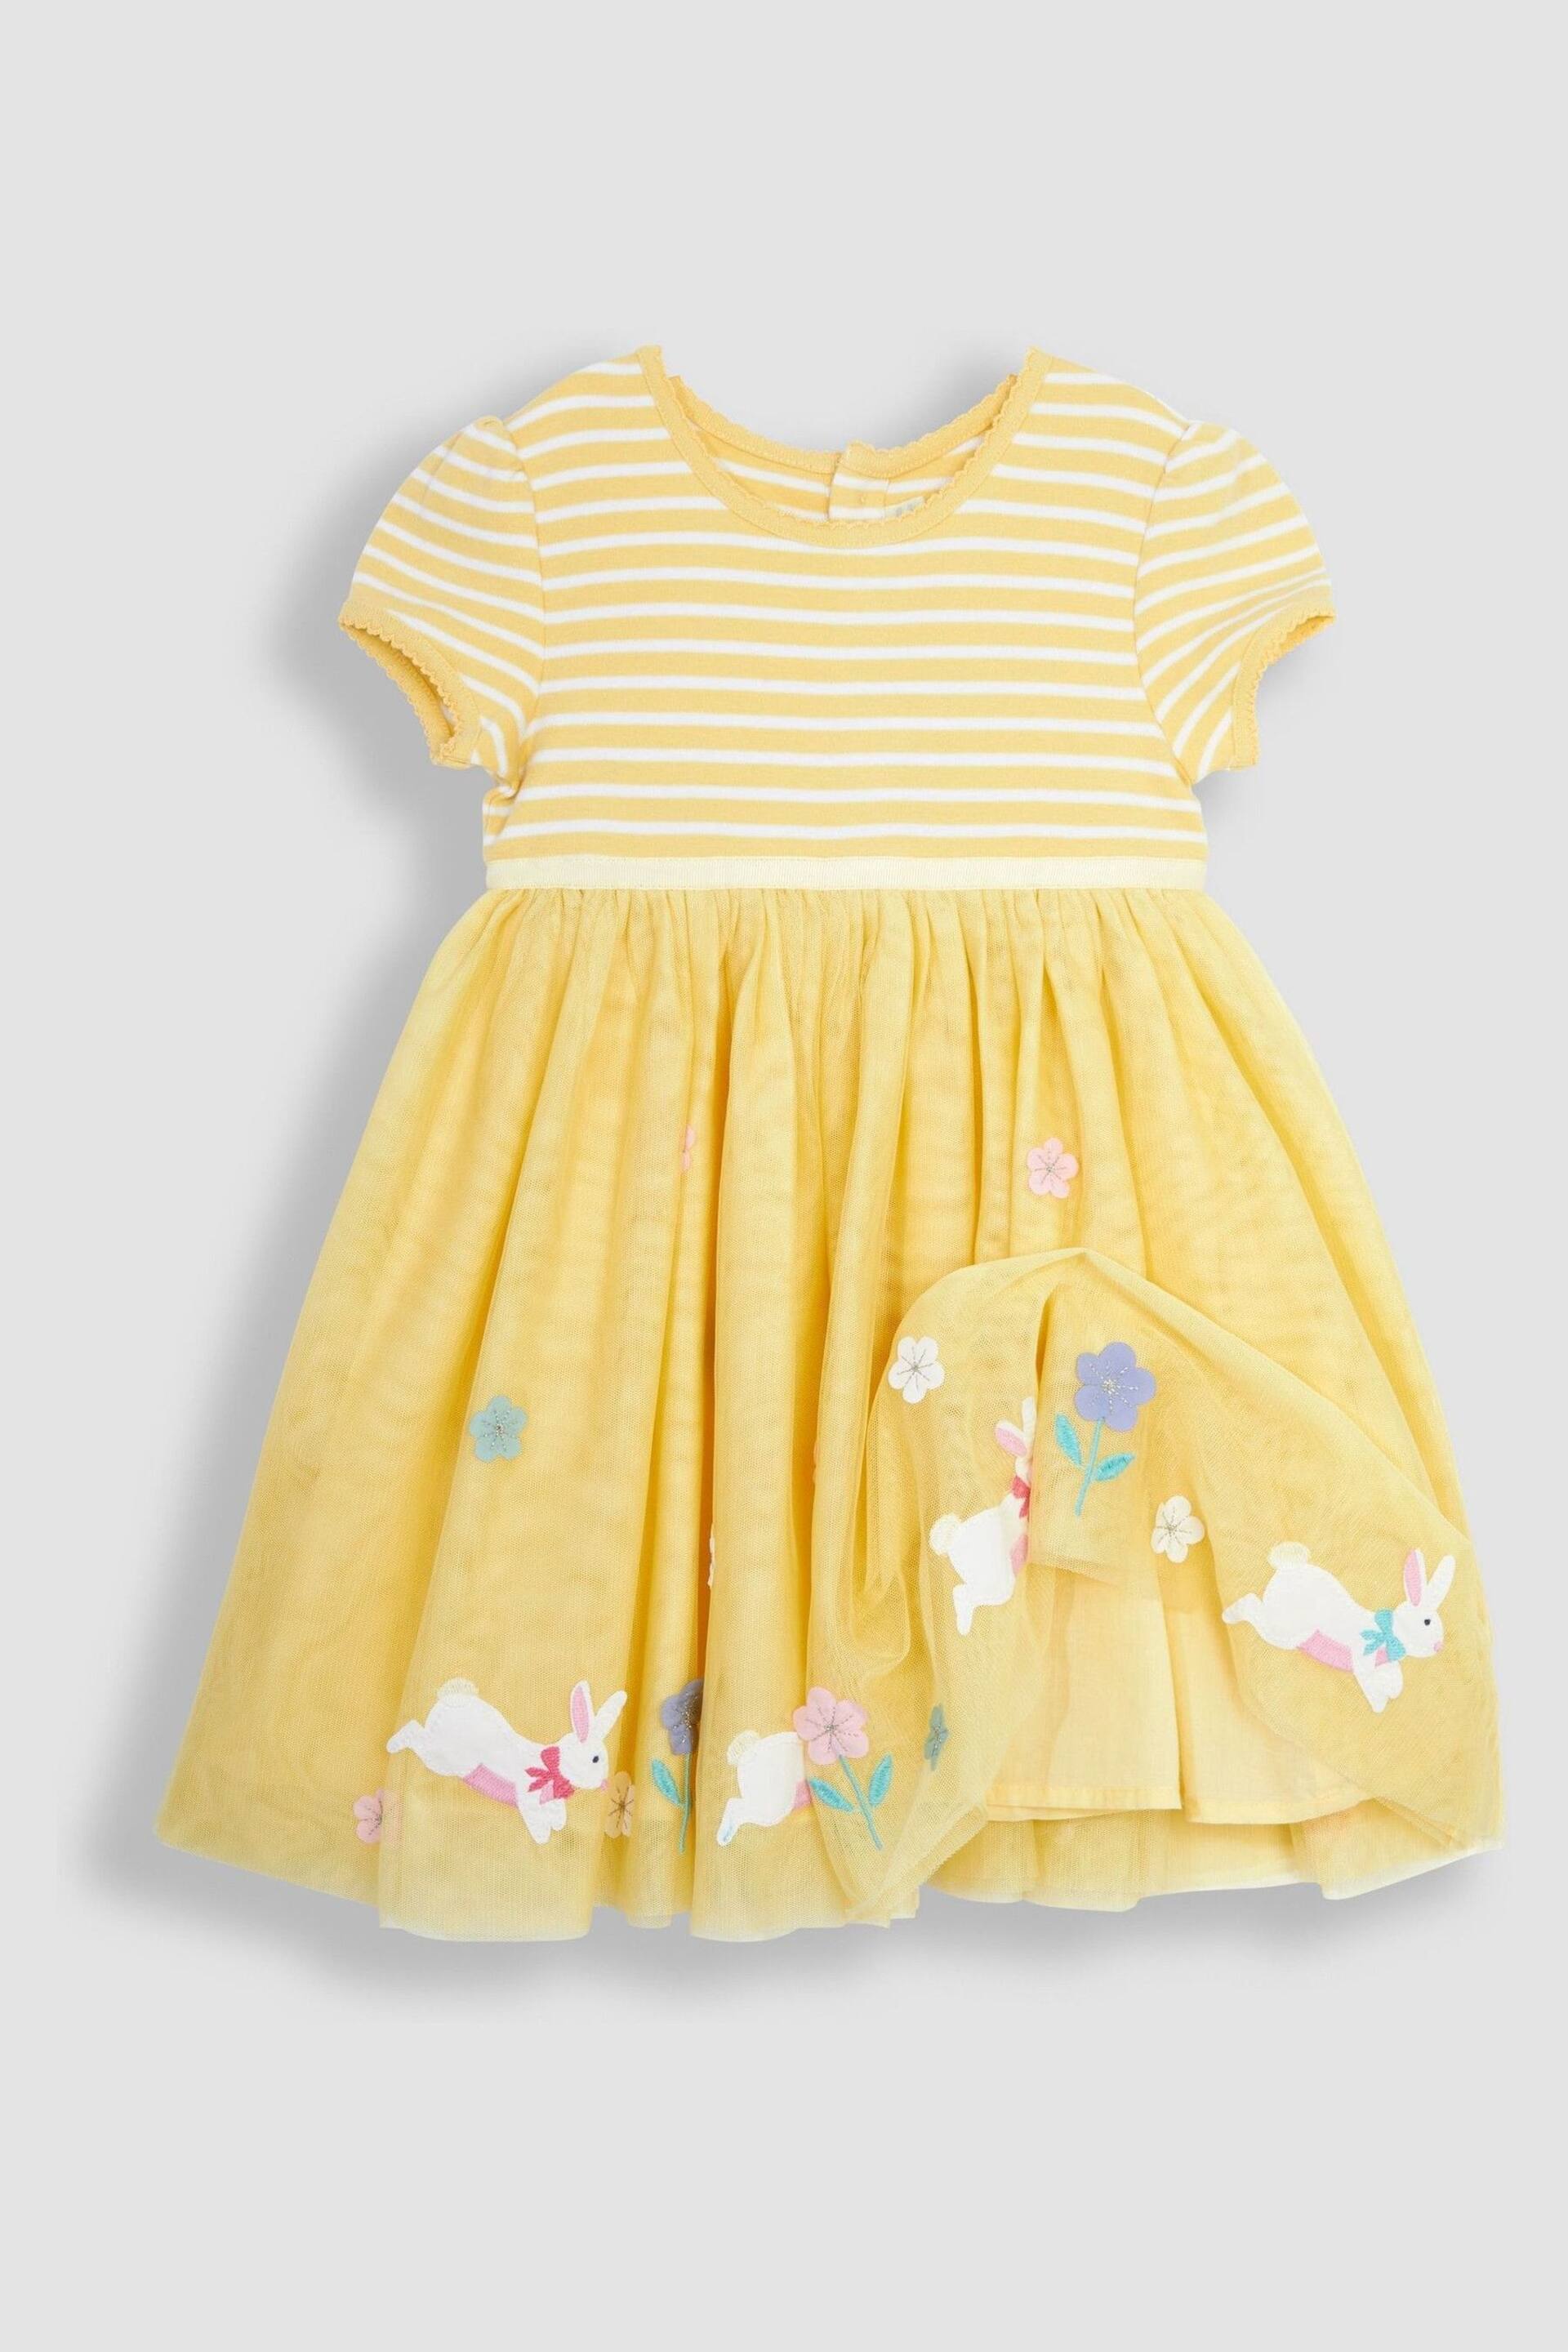 JoJo Maman Bébé Yellow Bunny Tulle Party Dress - Image 2 of 3